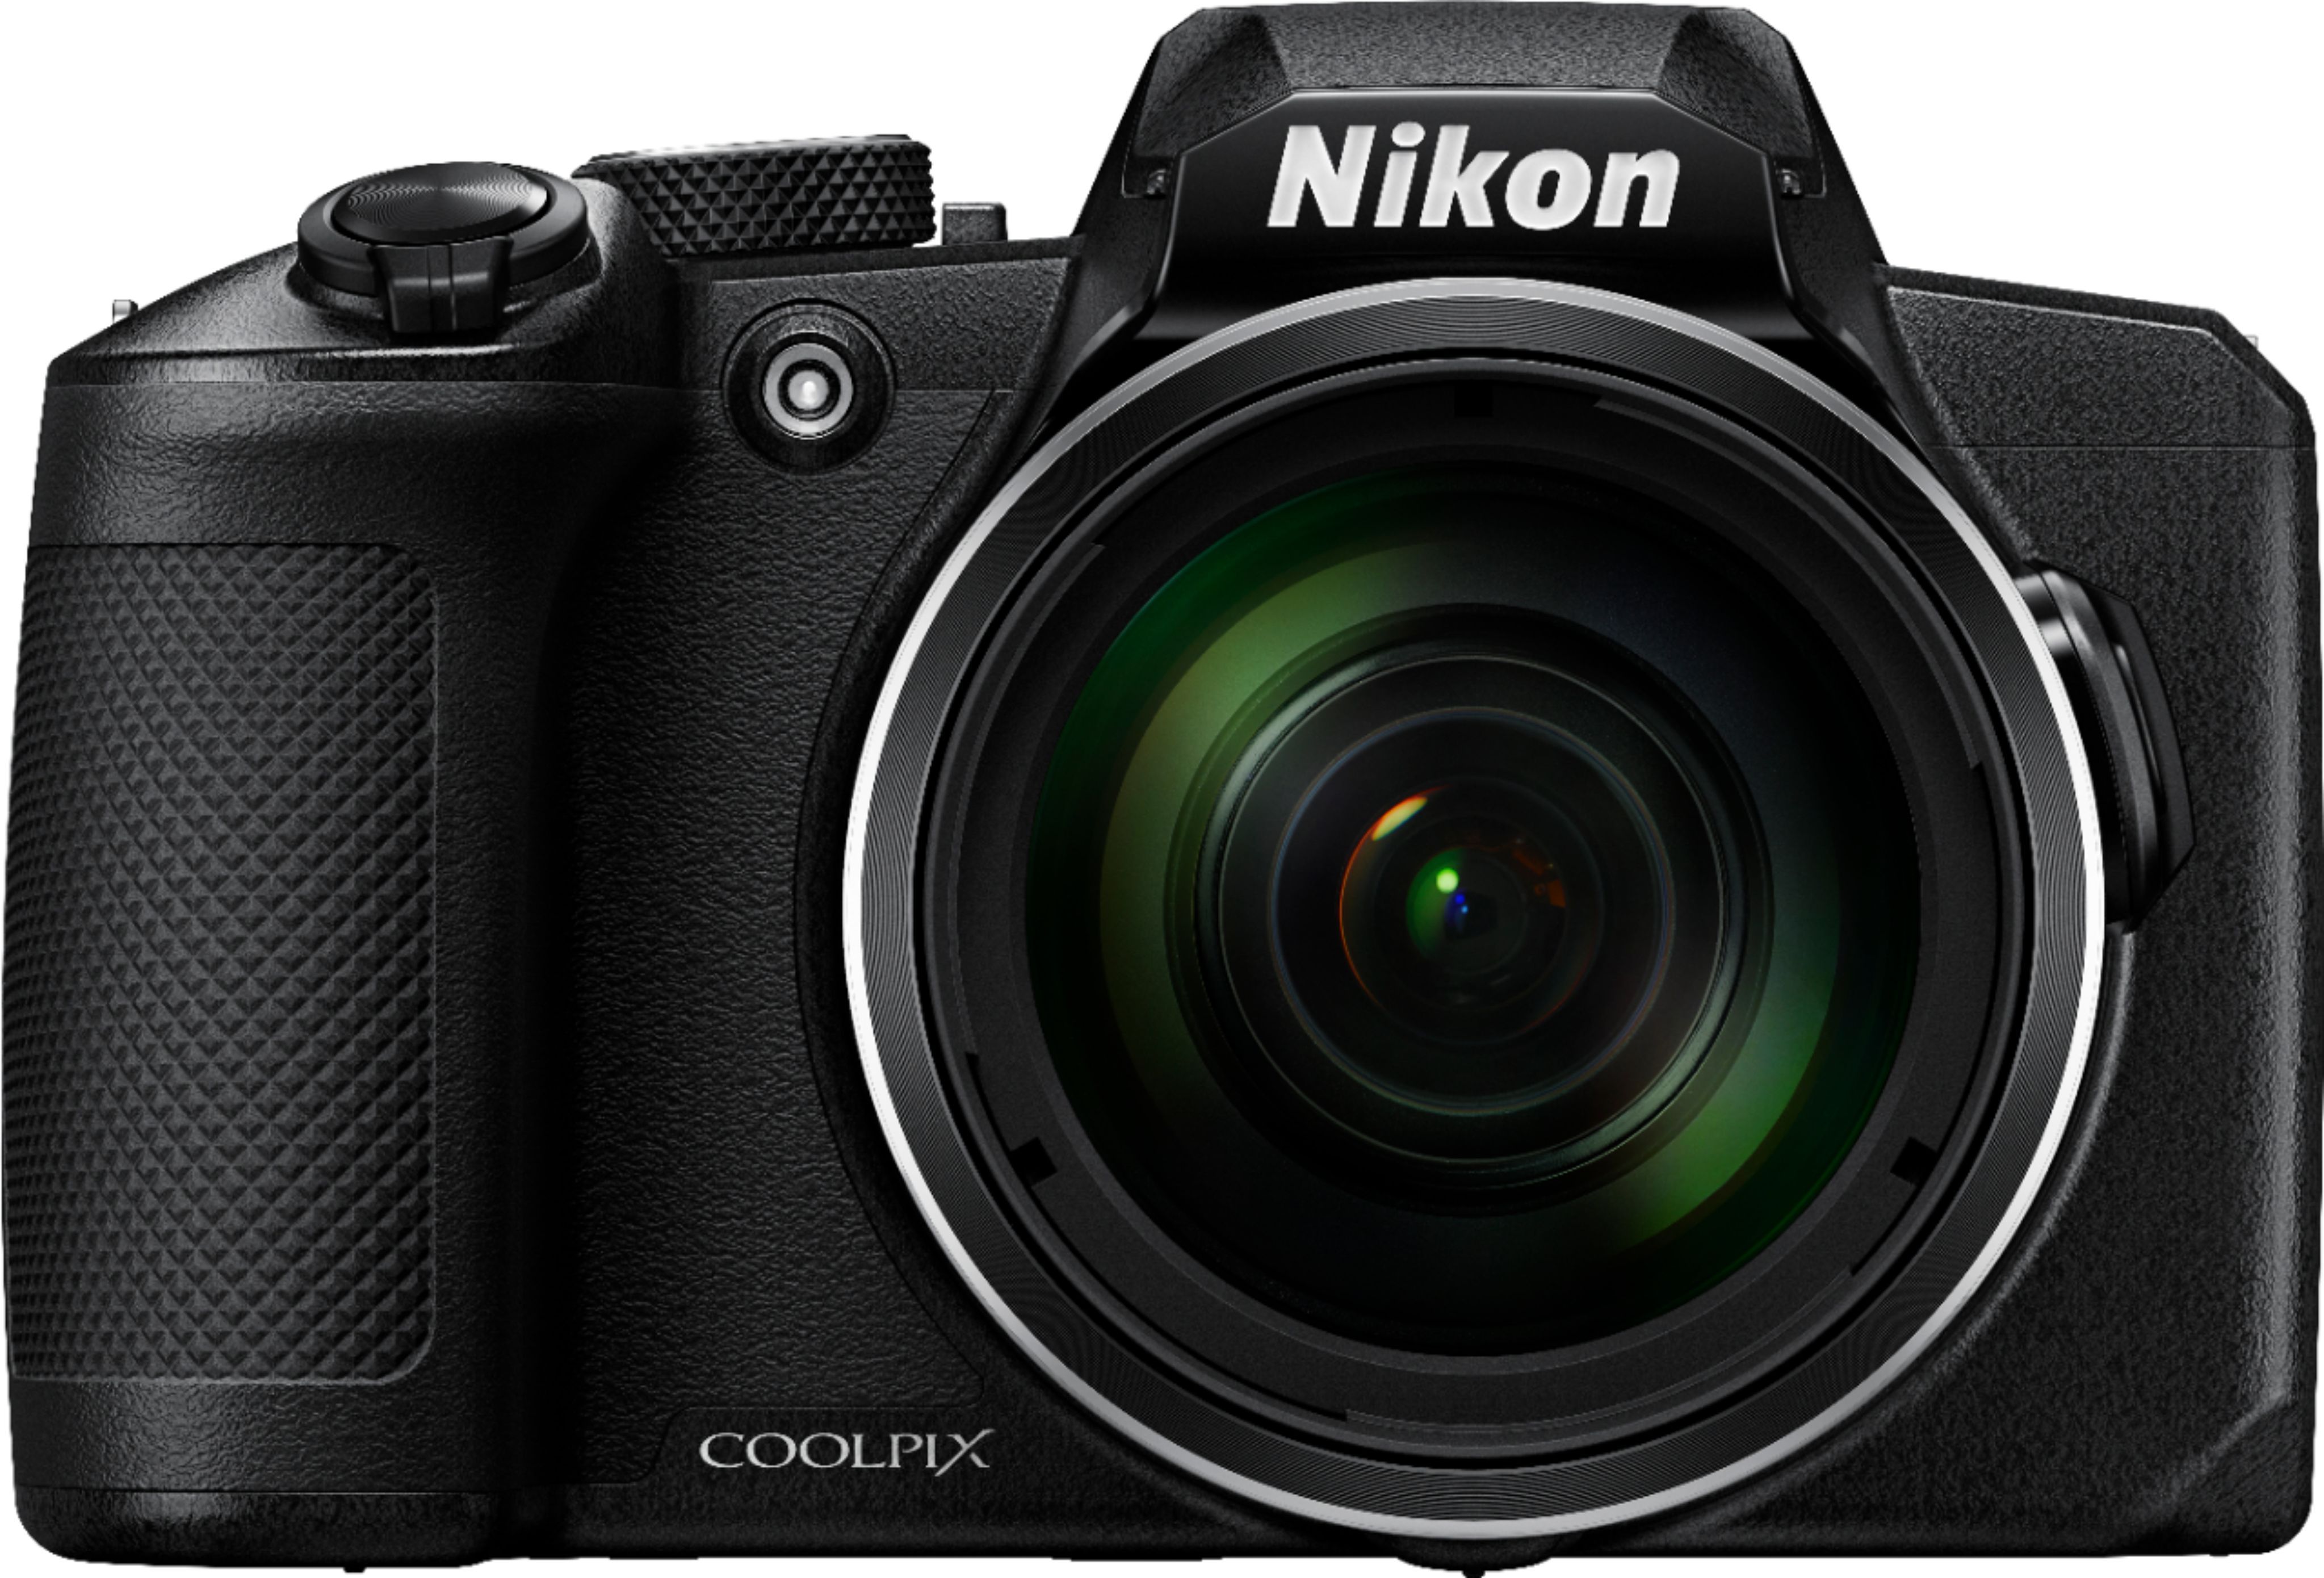 Nikon Coolpix B600 16.0-Megapixel Digital Camera Black 26528 - Best Buy | Best Buy U.S.